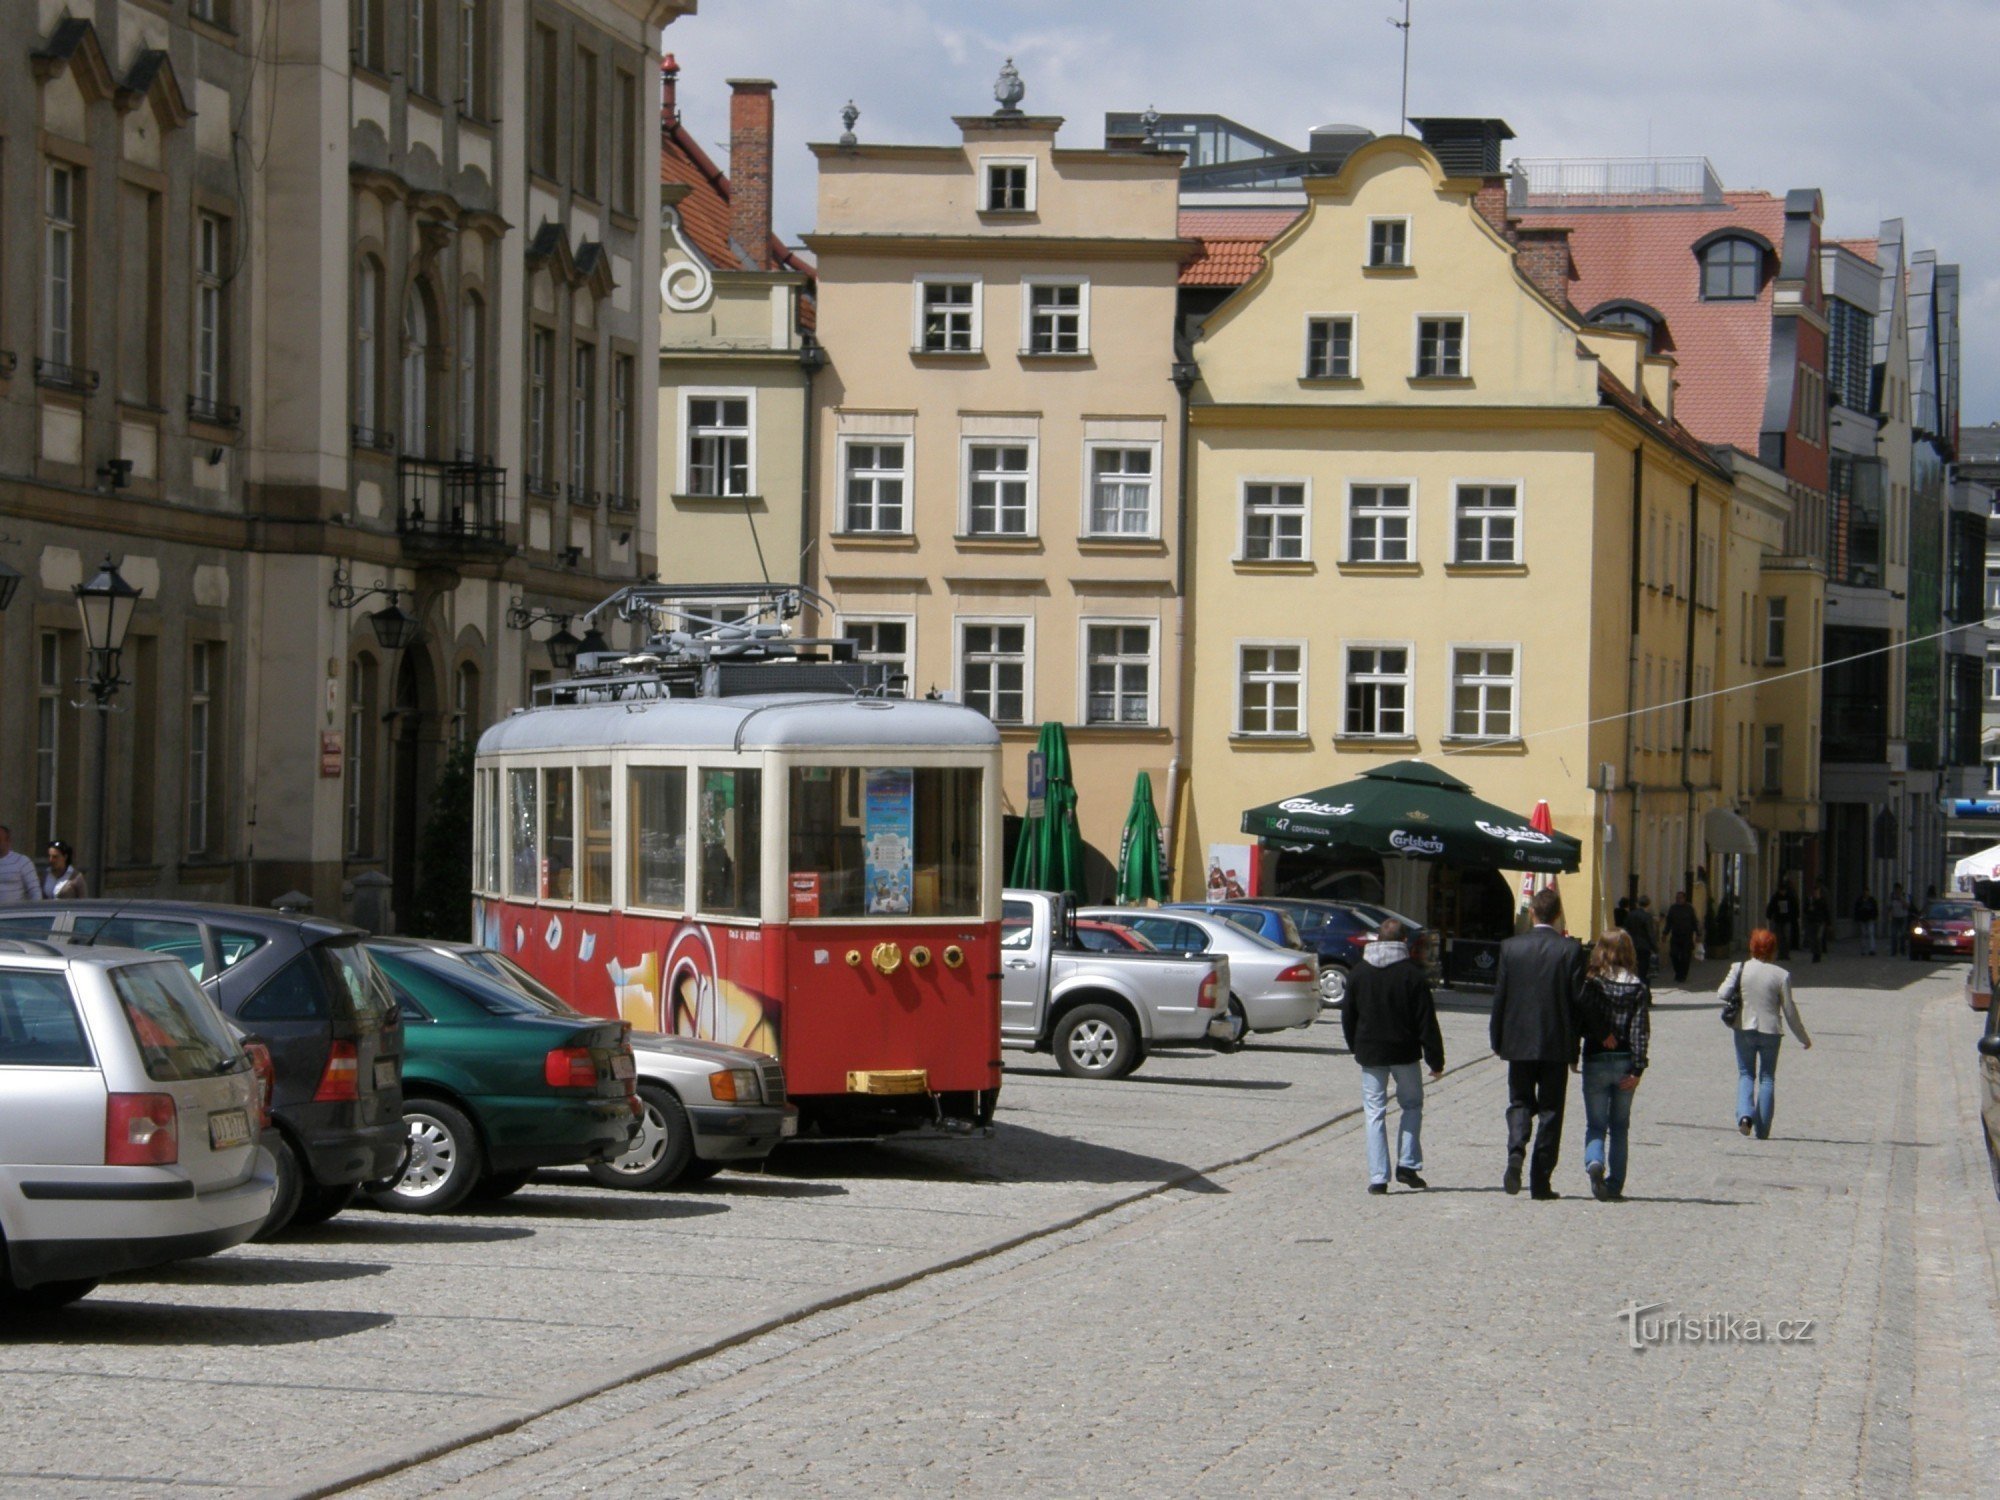 Les tramways de J.Góra se terminaient à 8O. années du siècle dernier